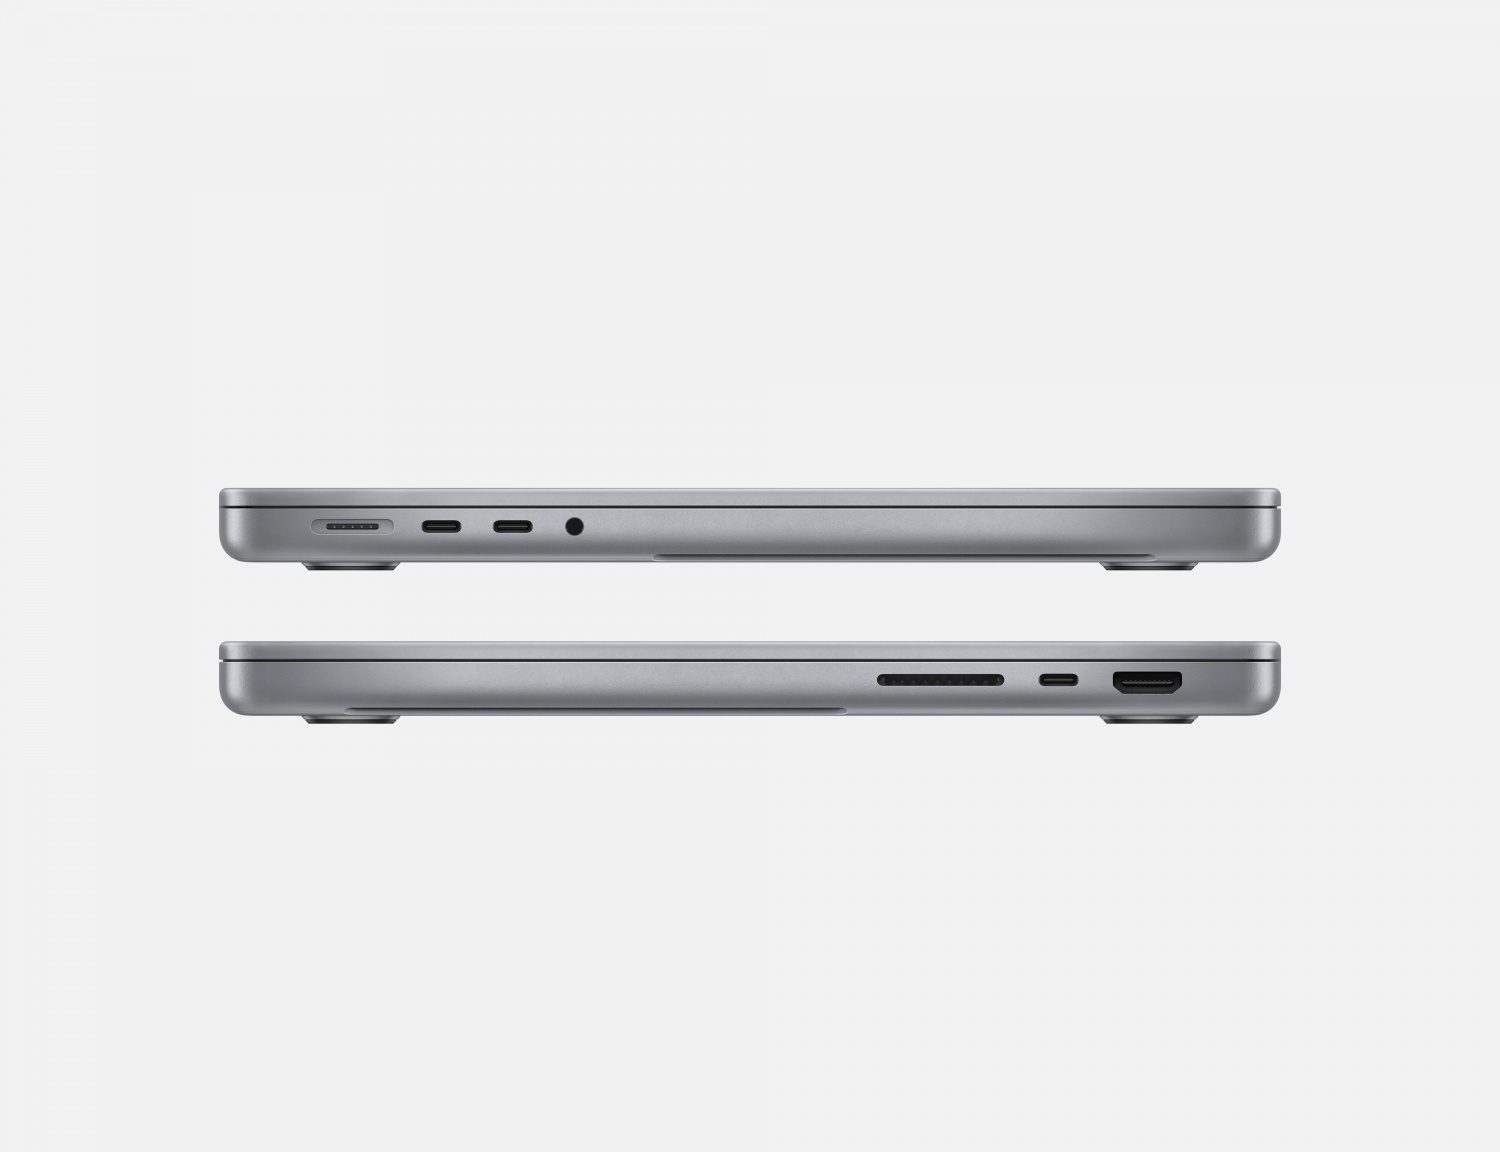 Купить ноутбук apple macbook pro 14 m2 pro/16/1tb space gray (mphf3) Apple MacBook Pro в официальном магазине Apple, Samsung, Xiaomi. iPixel.ru Купить, заказ, кредит, рассрочка, отзывы,  характеристики, цена,  фотографии, в подарок.